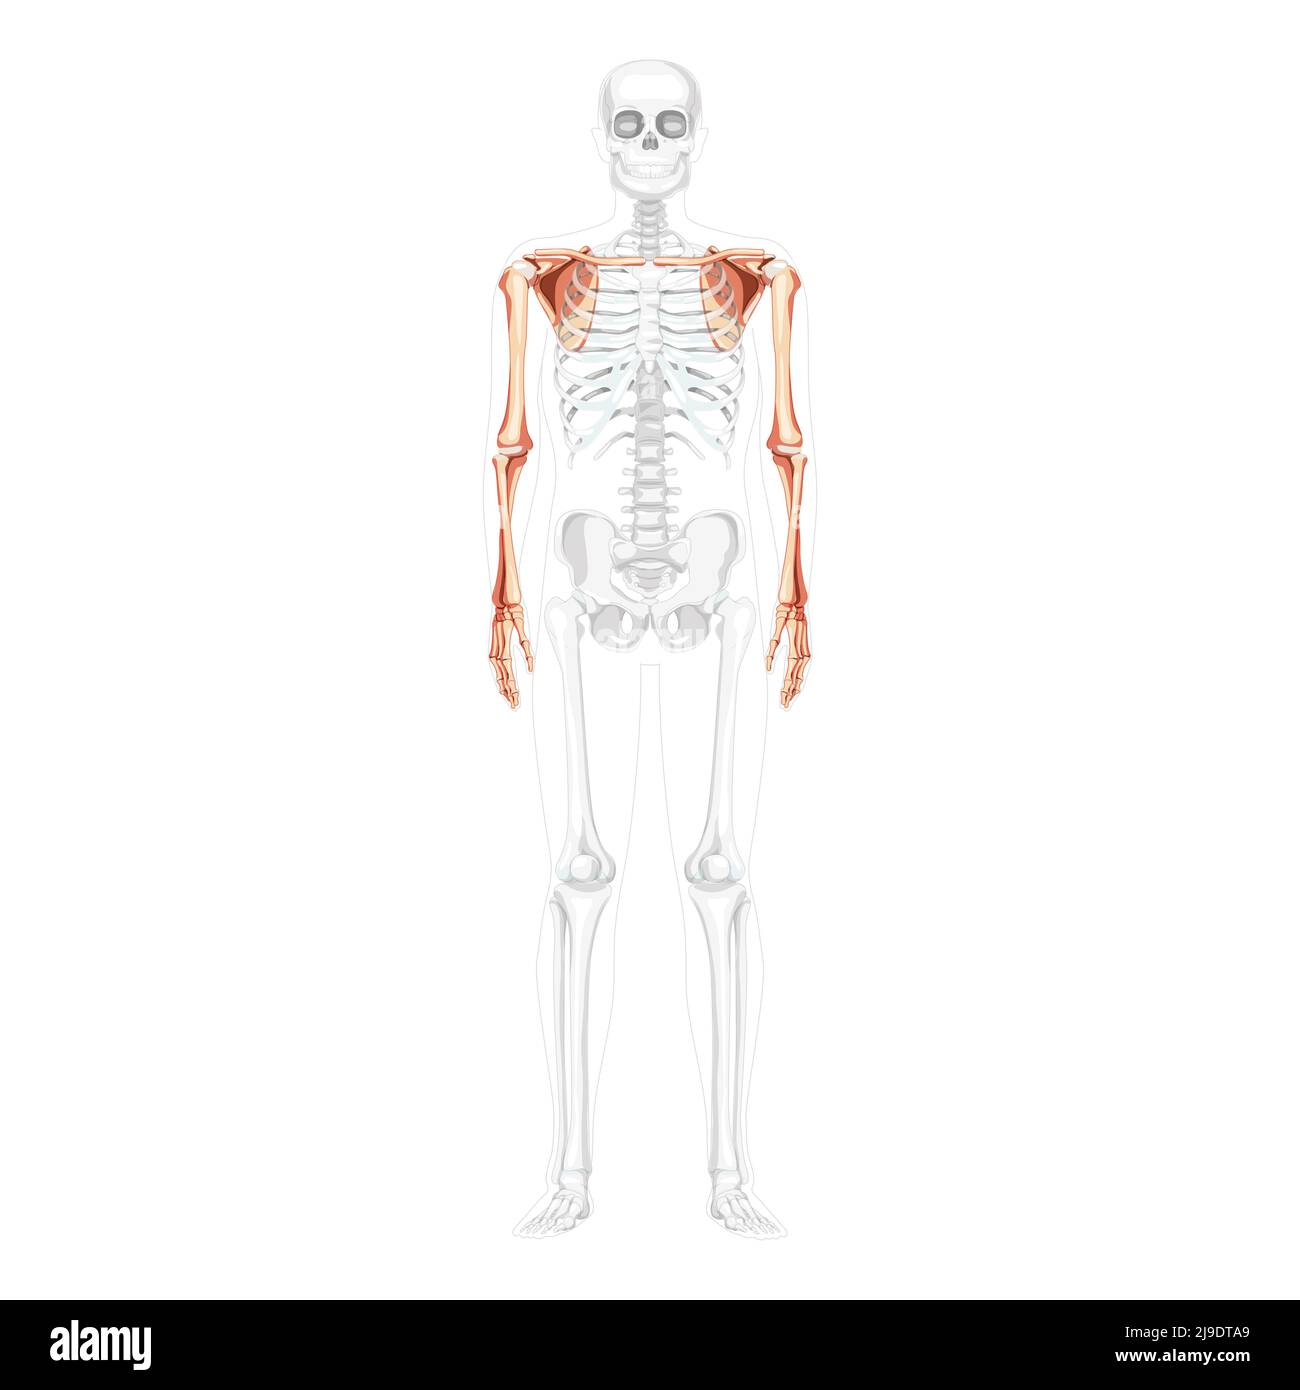 Scheletro arto superiore braccia con cintura spalla Vista frontale umana con posizione delle ossa parzialmente trasparente. Mani anatomicamente corrette, scapola, avambracci immagine vettoriale piatta realistica isolata Illustrazione Vettoriale